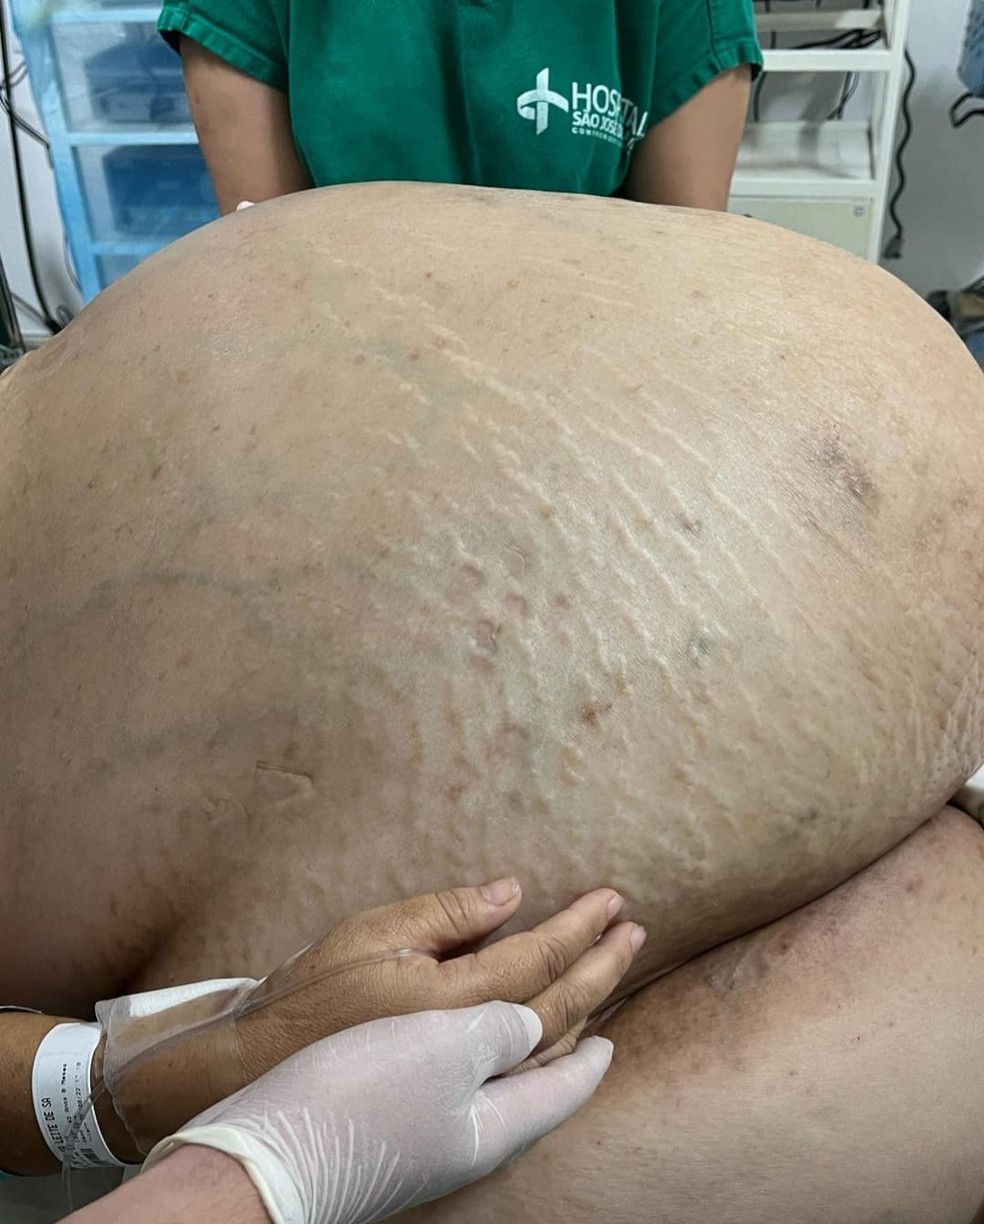 Paciente estava com o tumor há pelo menos 5 anos; mulher é natural de MG mas mora em Itaperuna — Foto: Reprodução/Instagram 